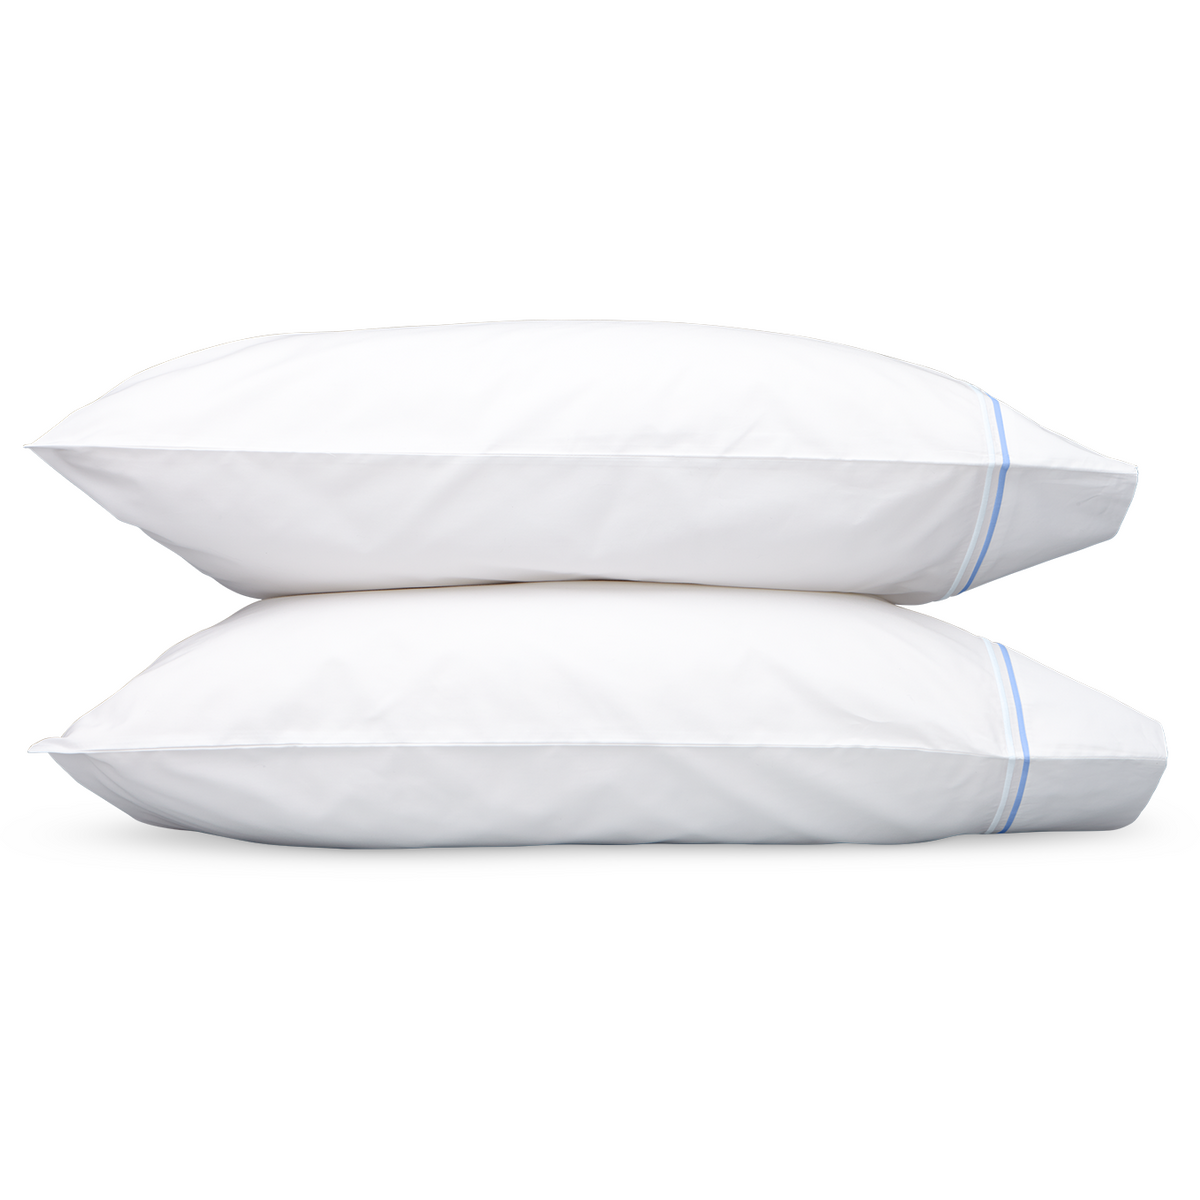 Matouk Essex High End Bed Sheet Sets Pillowcases Azure Fine Linens